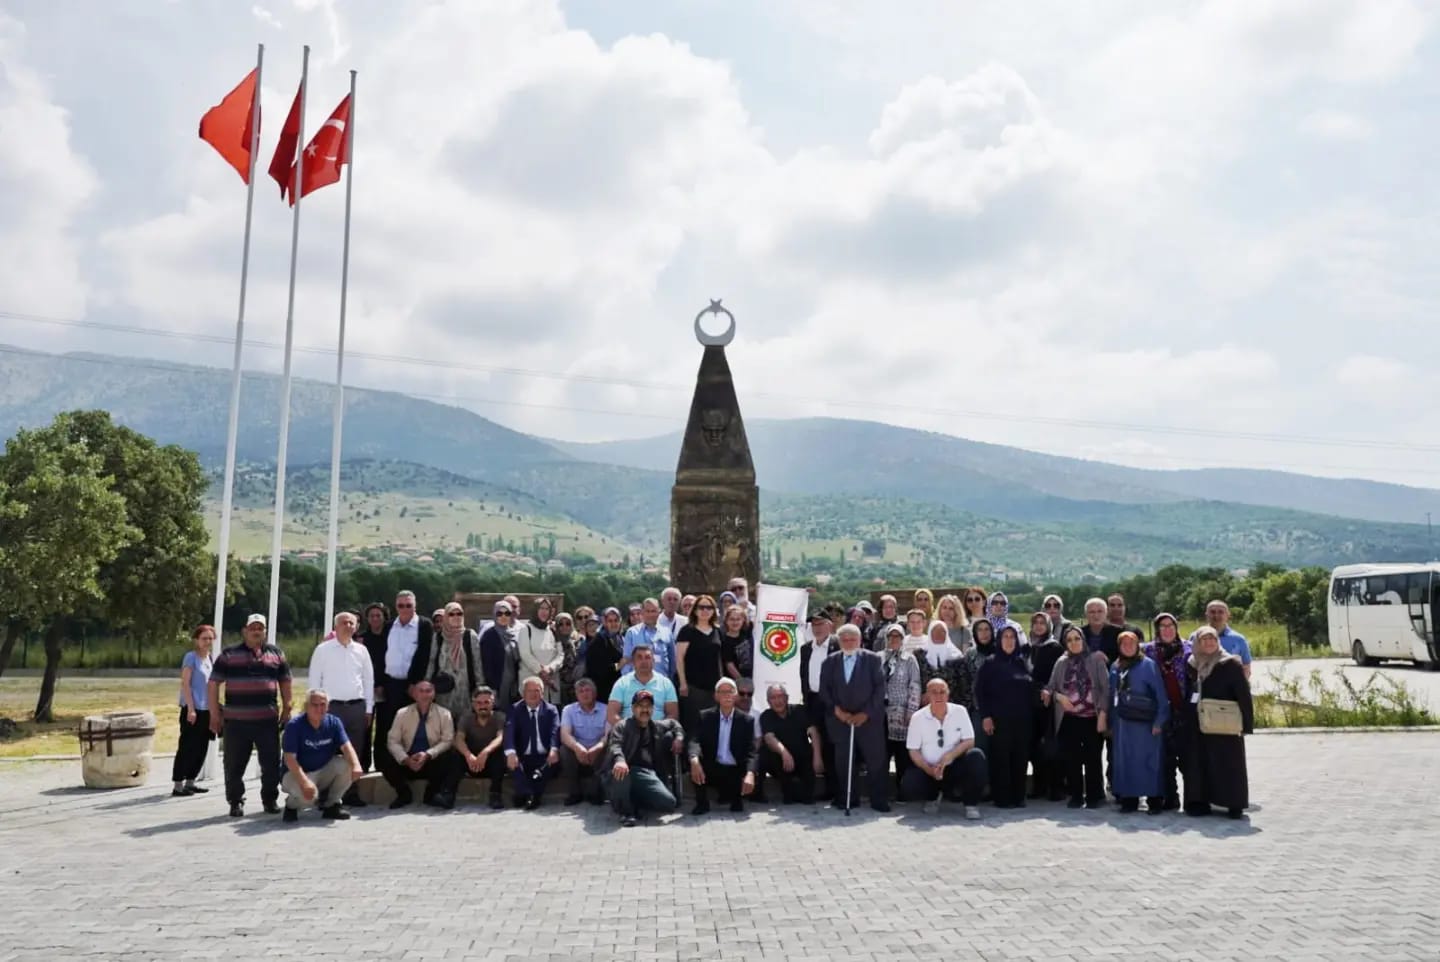 Çivril Belediyesi olarak Türkiye Harp Malülü Gaziler Şehit Dul ve Yetimleri Derneği üyelerini ilçemizde bulunan gazi ve şehit yakınları ile buluşturduk.